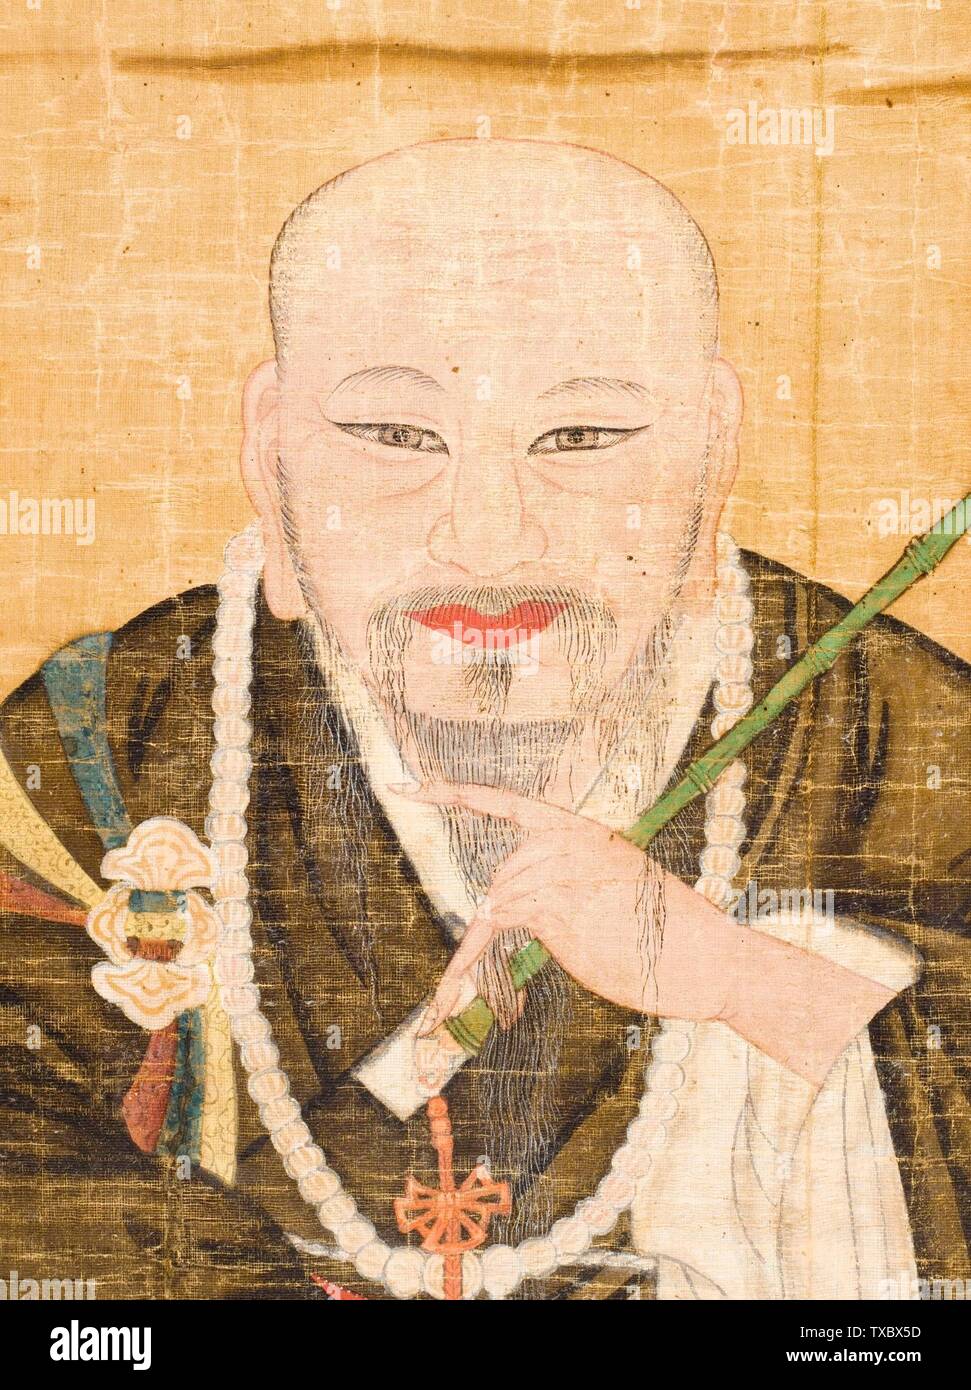 Retrato del Gran Monje Sa'myeong (imagen 3 de 4); Corea, coreano, dinastía Joseon (1392-1910), pintura de finales del siglo 19 Panel, tinta y color en cáñamo Imagen: 35 1/2 x 23 pulgadas. (90.17 x 58.42 cm); montaje: 38 3/8 x 25 7/8 pulg. (97.47 x 65.72 cm); bastidor: 39 7/8 x 27 3/8 pulg. (101.28 x 69.53 cm) Adquirido con Museum Funds (M. 20.15.8) Korean Art; a finales del siglo XIX fecha QS:P571,+1850-00-00T00:00:00Z/7,P4241,Q40719766; Foto de stock